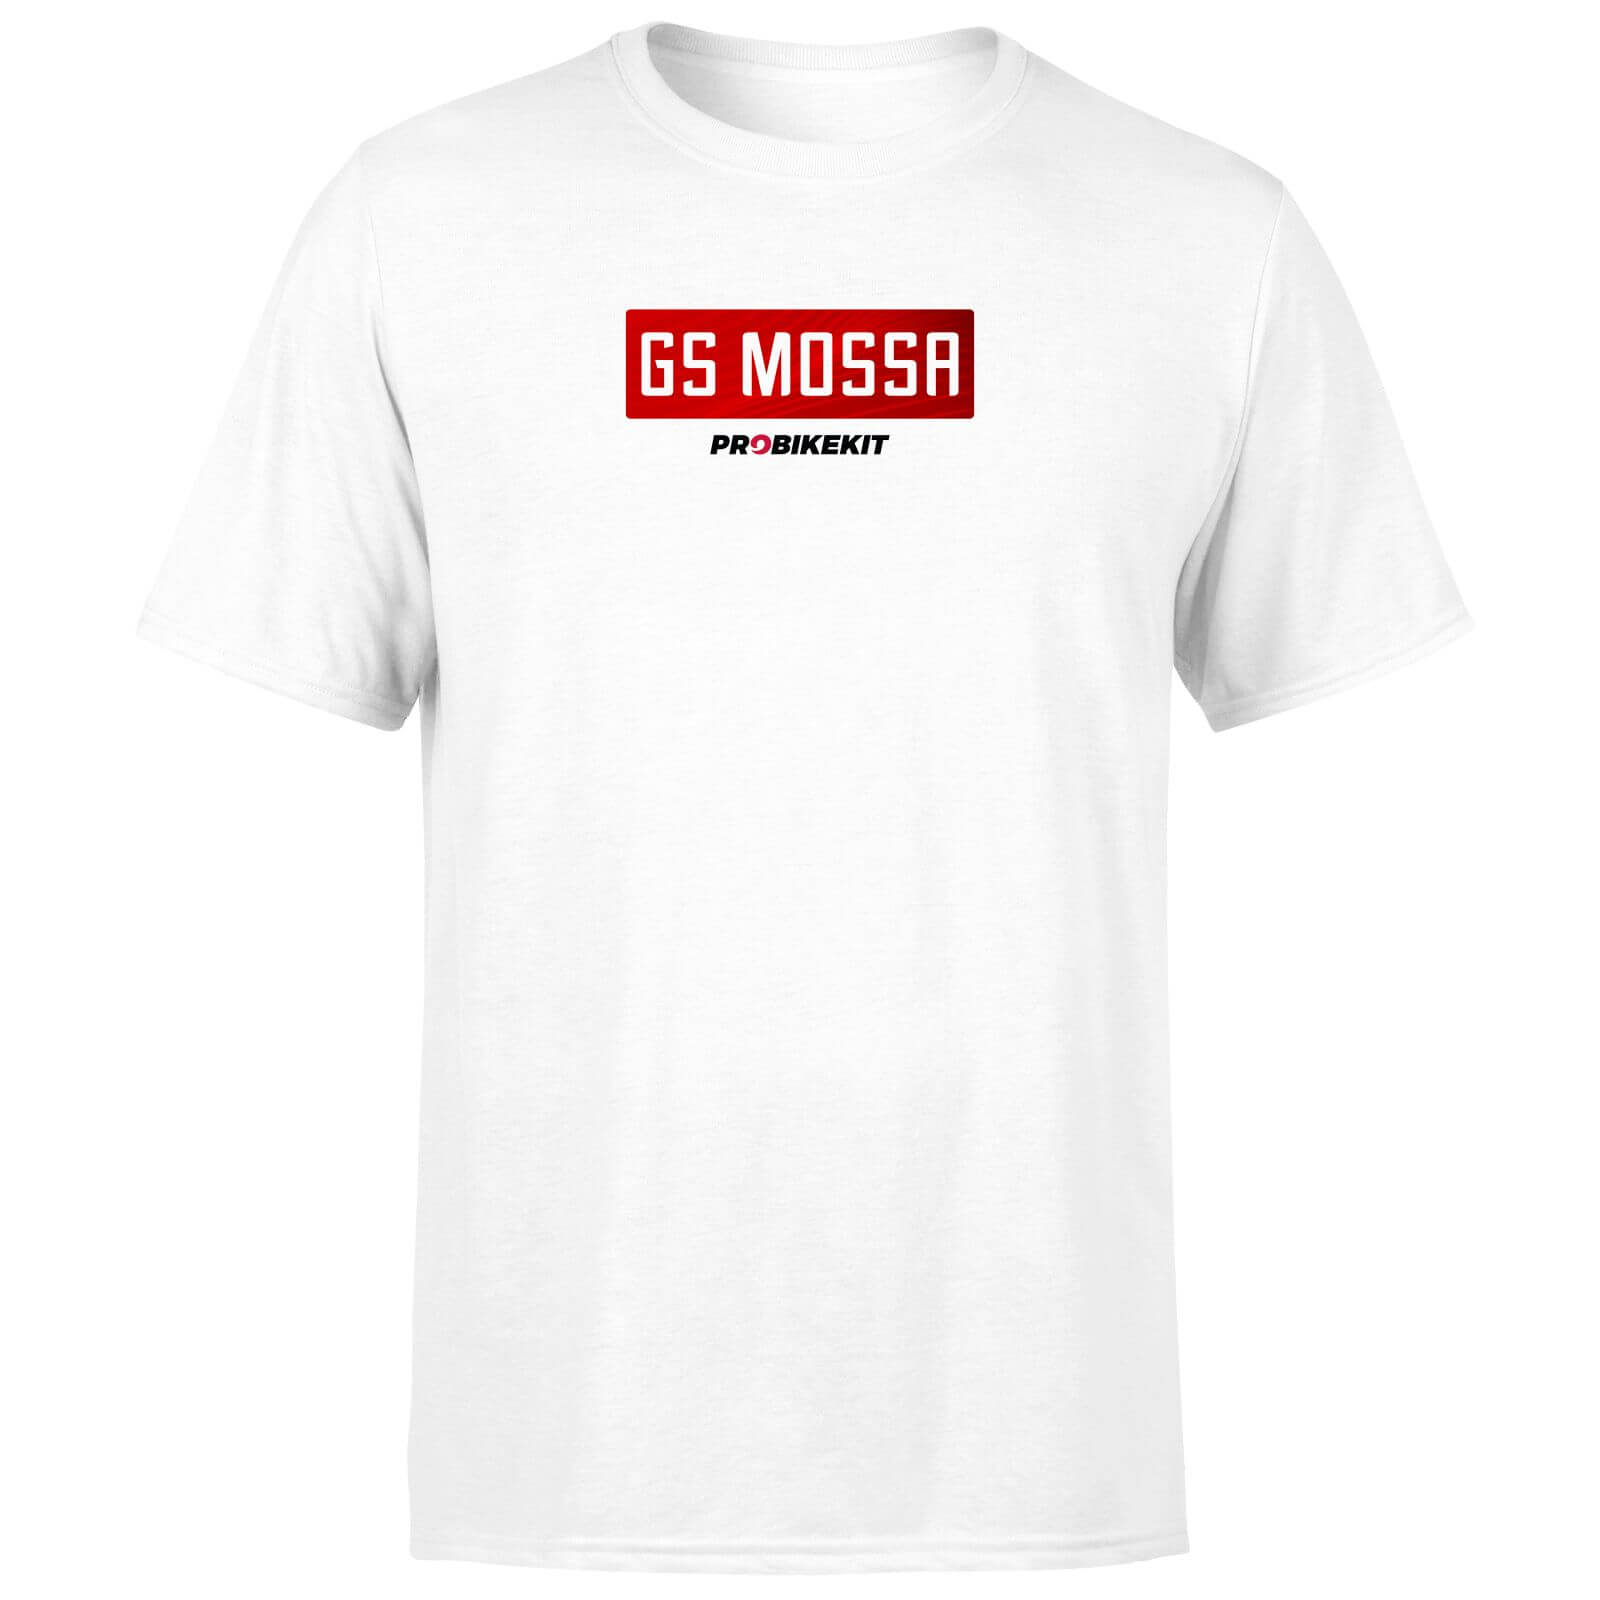 PBK GS Mossa Boxed Chest Logo Men's T-Shirt - White - XXL - White